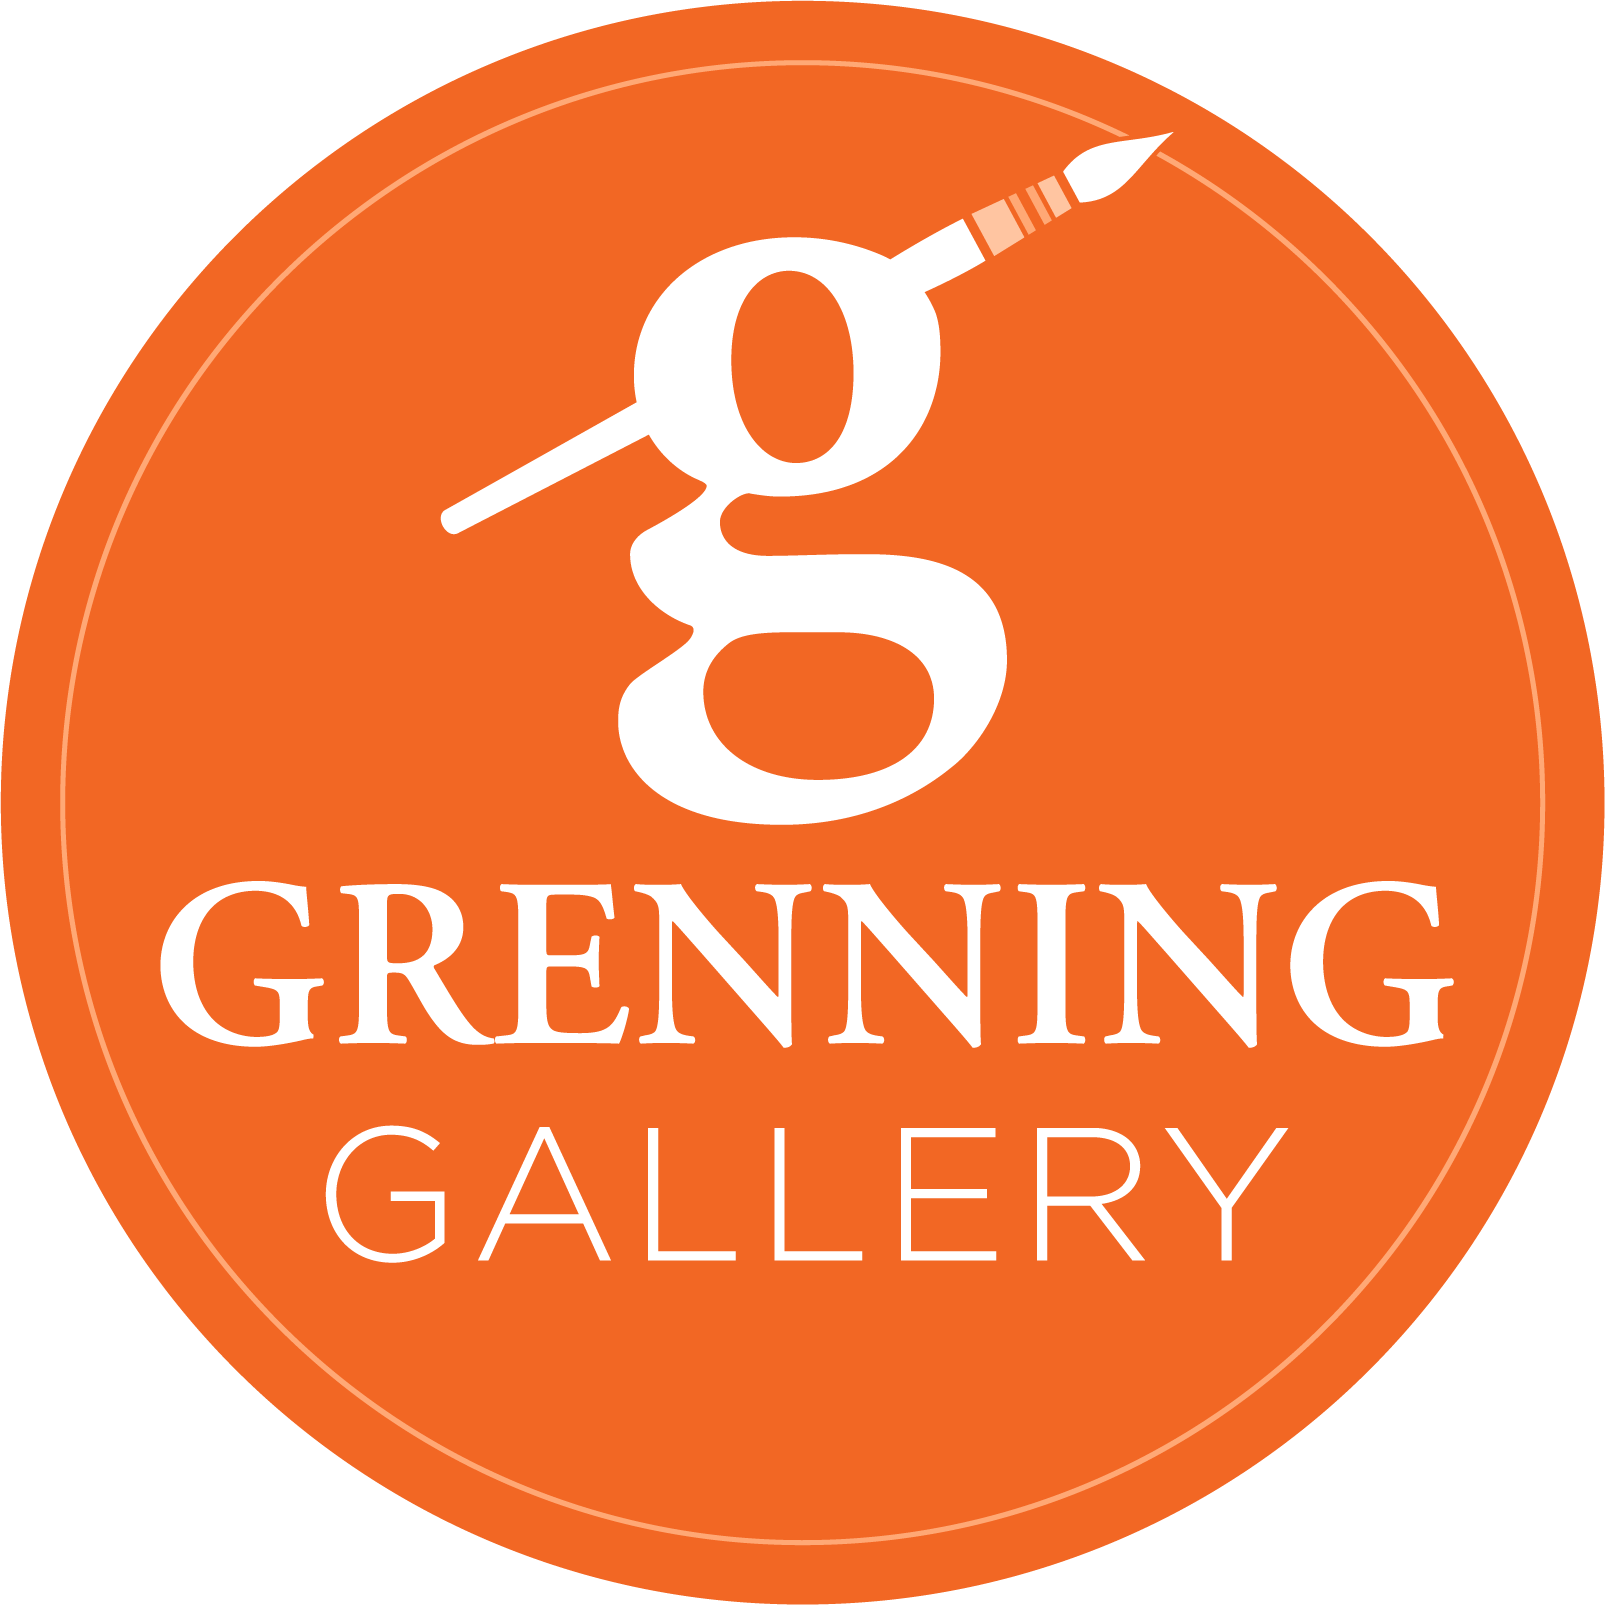 Grenning Gallery